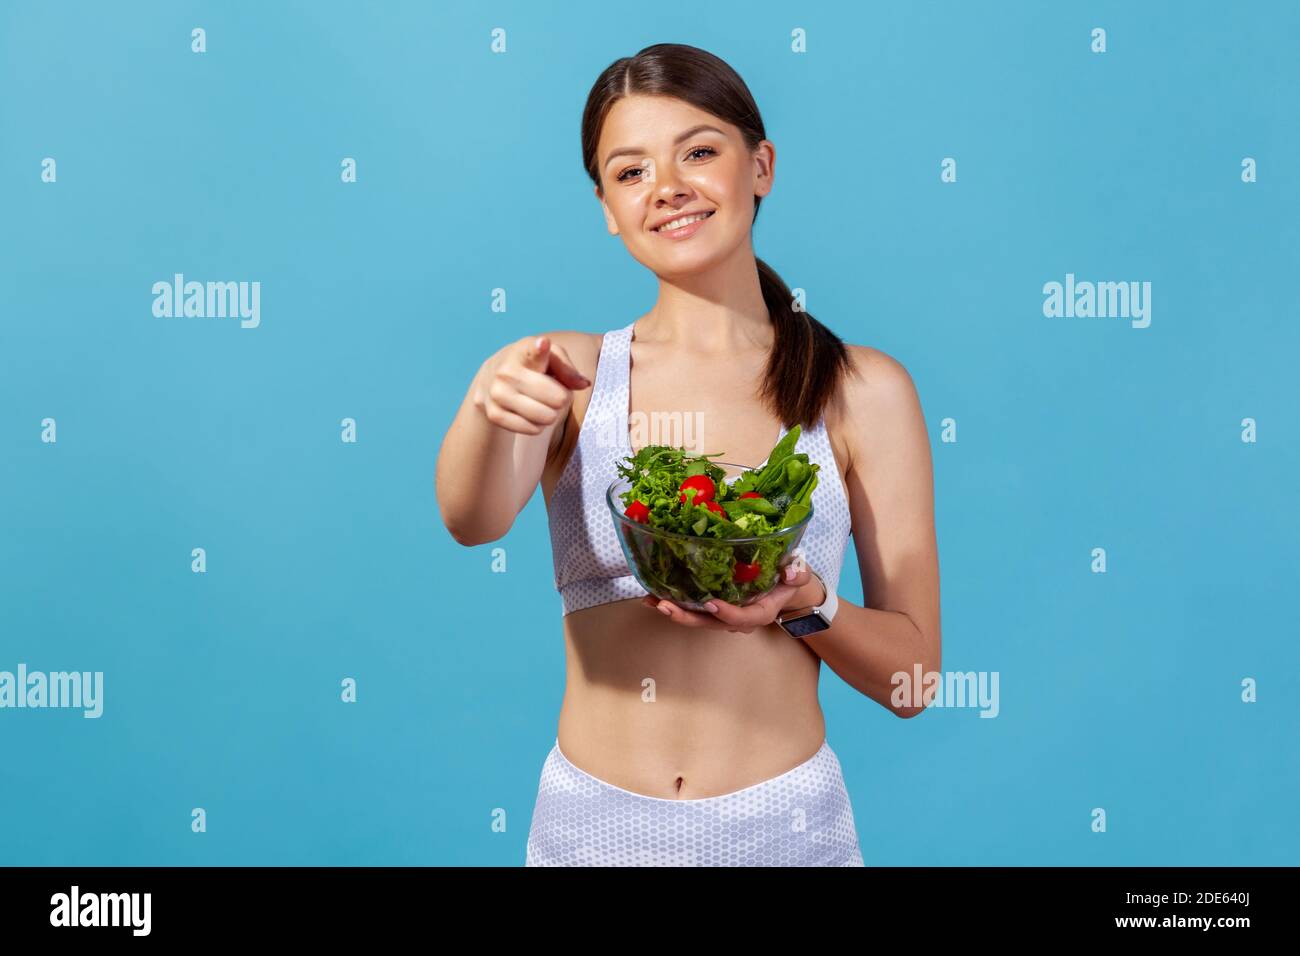 Lächelnde Frau ist weiße Sportswear mit schlanken Körper zeigt Finger auf Sie halten Schüssel mit Gemüsesalat, was darauf hindeutet, Ernährung. Studio im Innenbereich Stockfoto